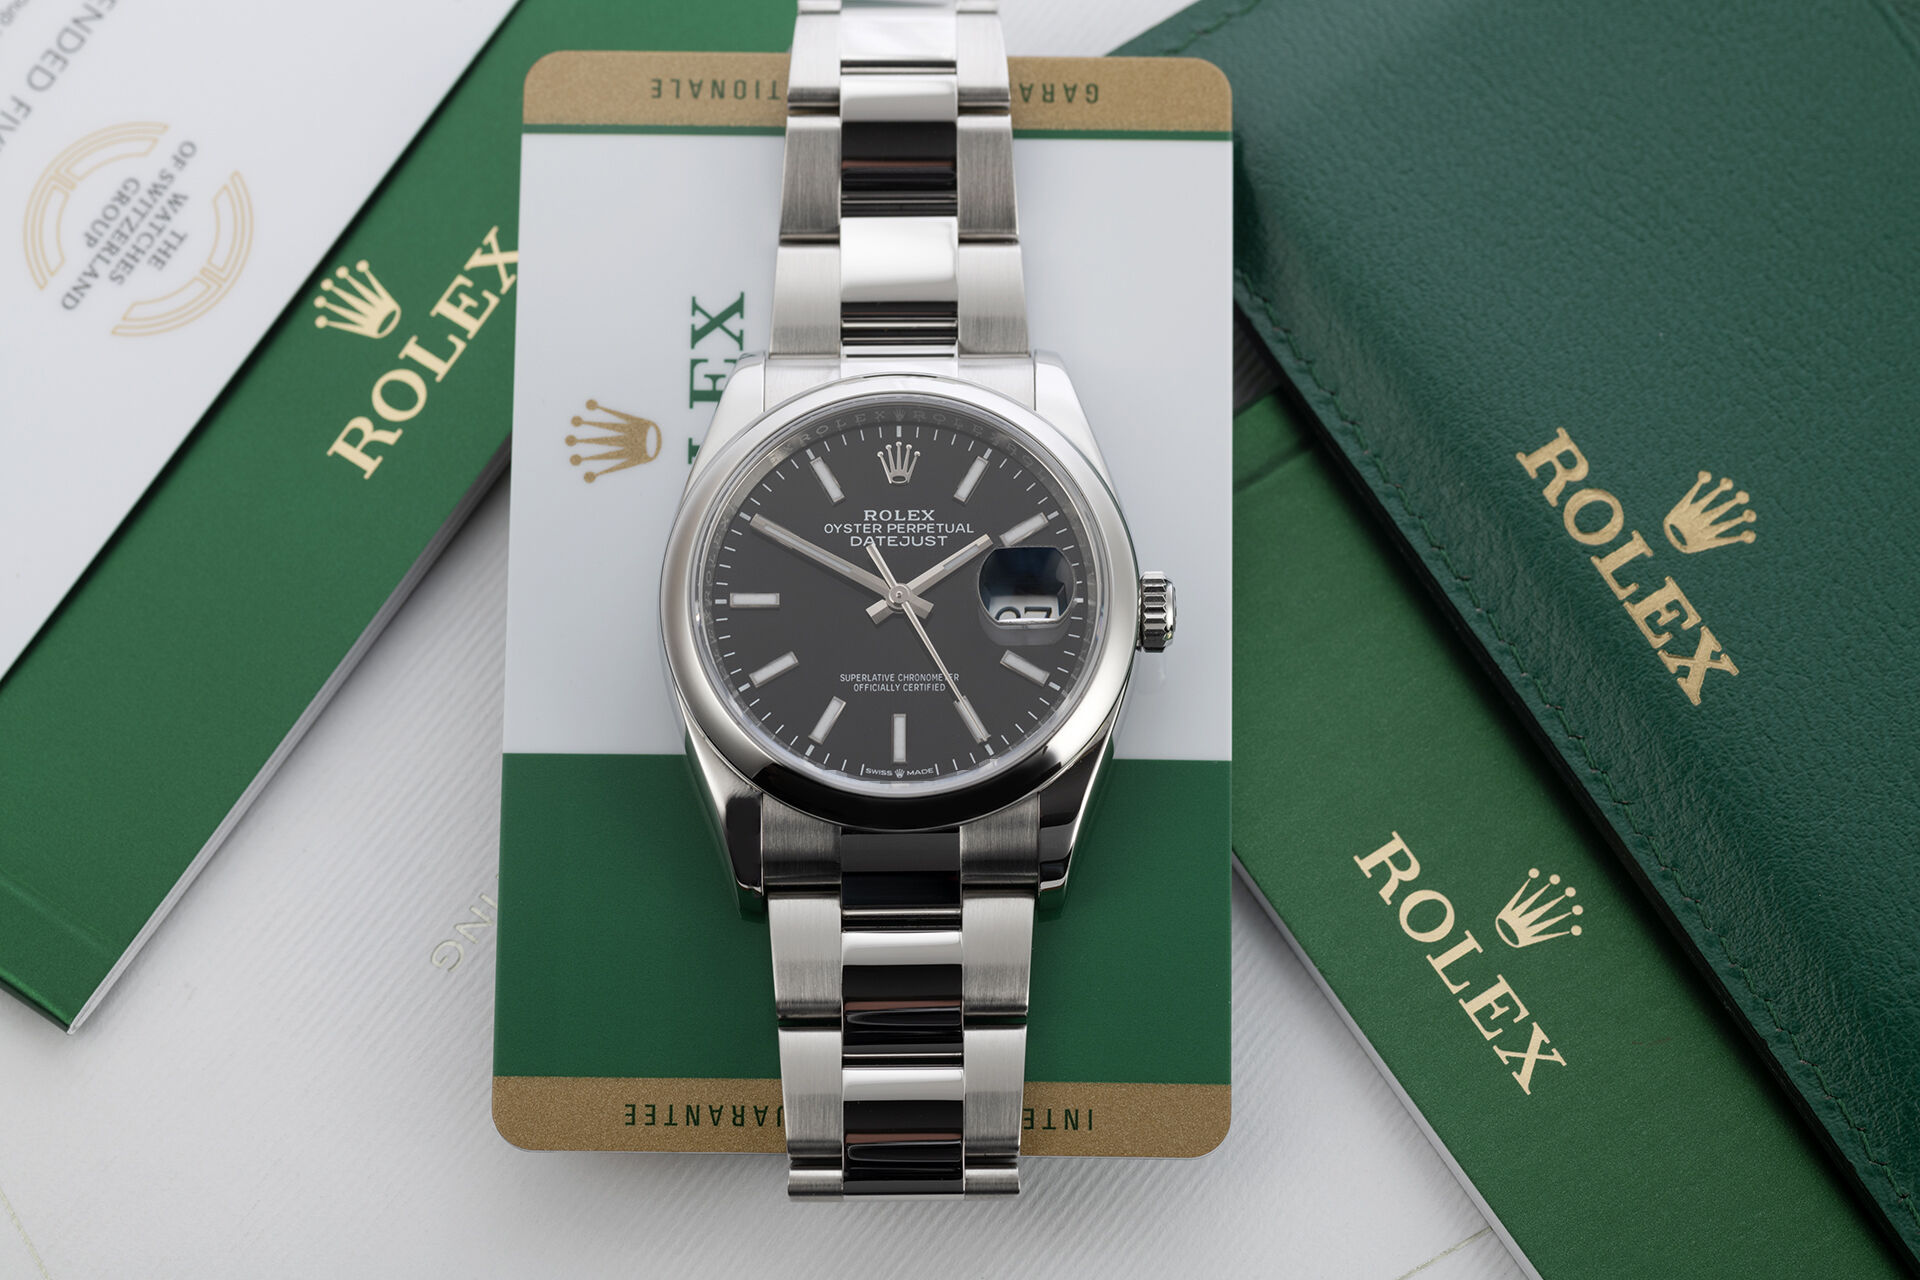 ref 126200-0003 | Box & Certificate | Rolex Datejust 36